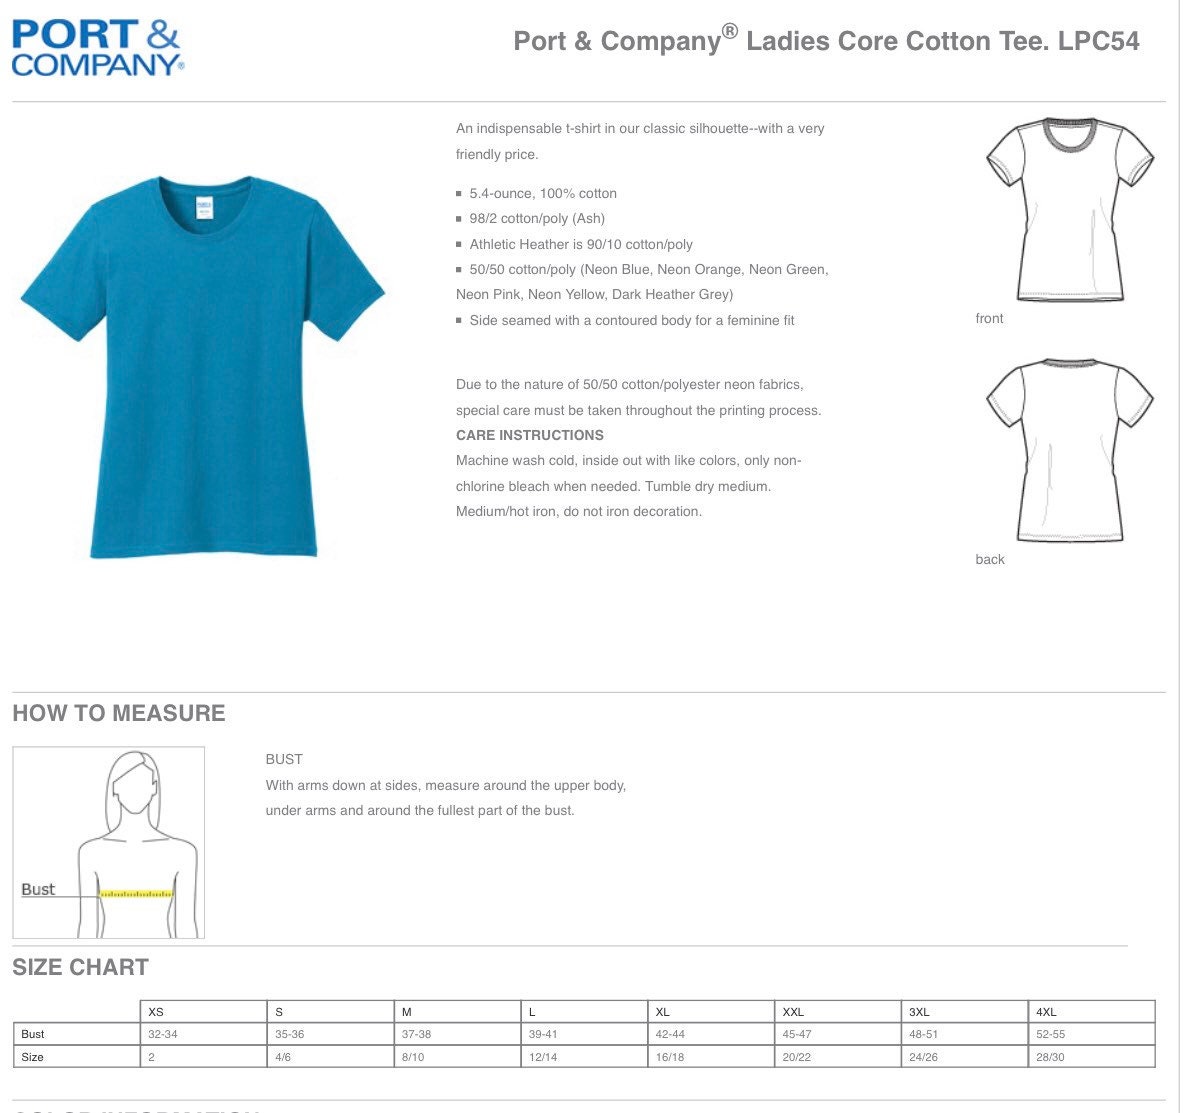 Choppa Style Louisiana Football Choppa Style Shirt New | Etsy